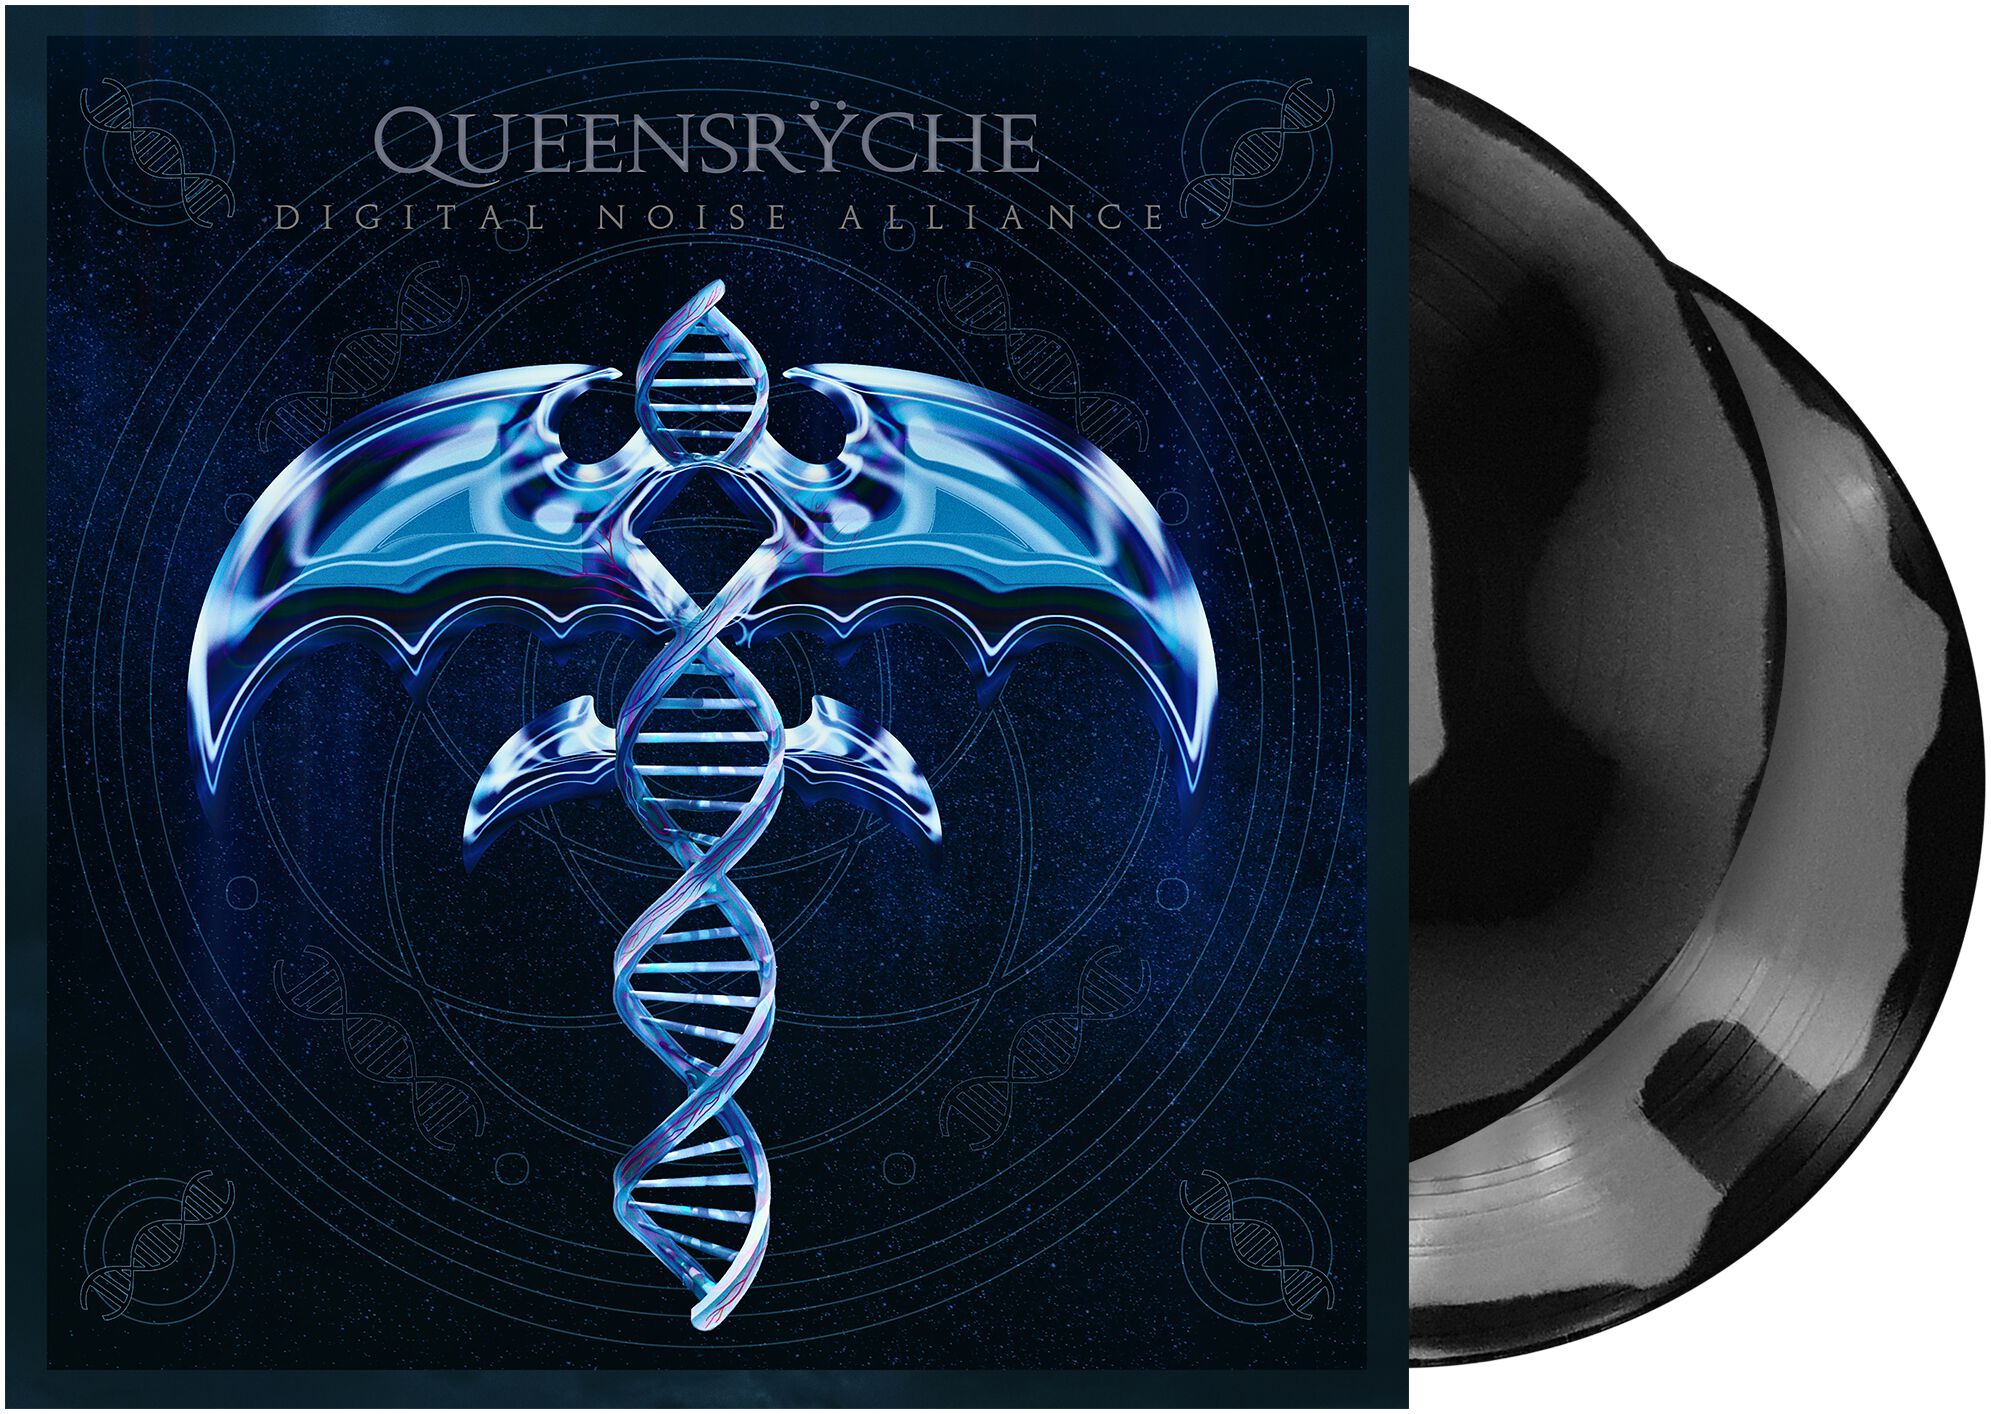 Queensryche - Digital noise alliance - LP - farbig - EMP Exklusiv!